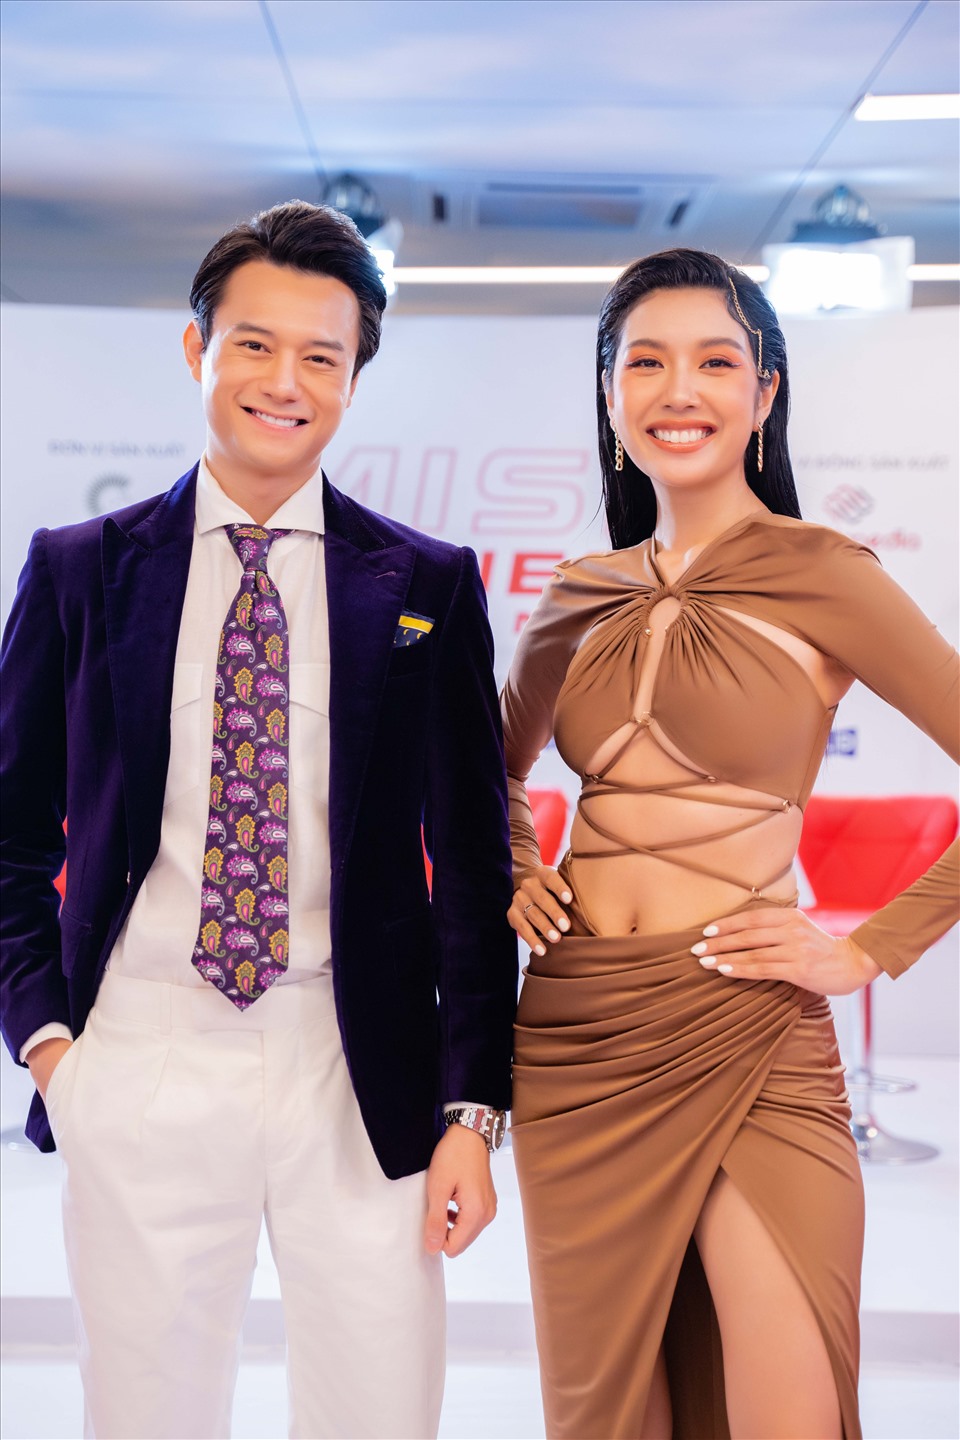 Ở buổi sơ tuyển trực tuyến “Miss Fitness Vietnam 2022” diễn ra vào ngày 11.1, Nguyễn Anh Dũng cũng nhận được nhiều được sự khen ngợi của cư dân mạng về ngoại hình, sự vui tính và kết nối khéo léo với các Mentor khi BTC hé lộ hàng loạt hình ảnh, clip hậu trường.